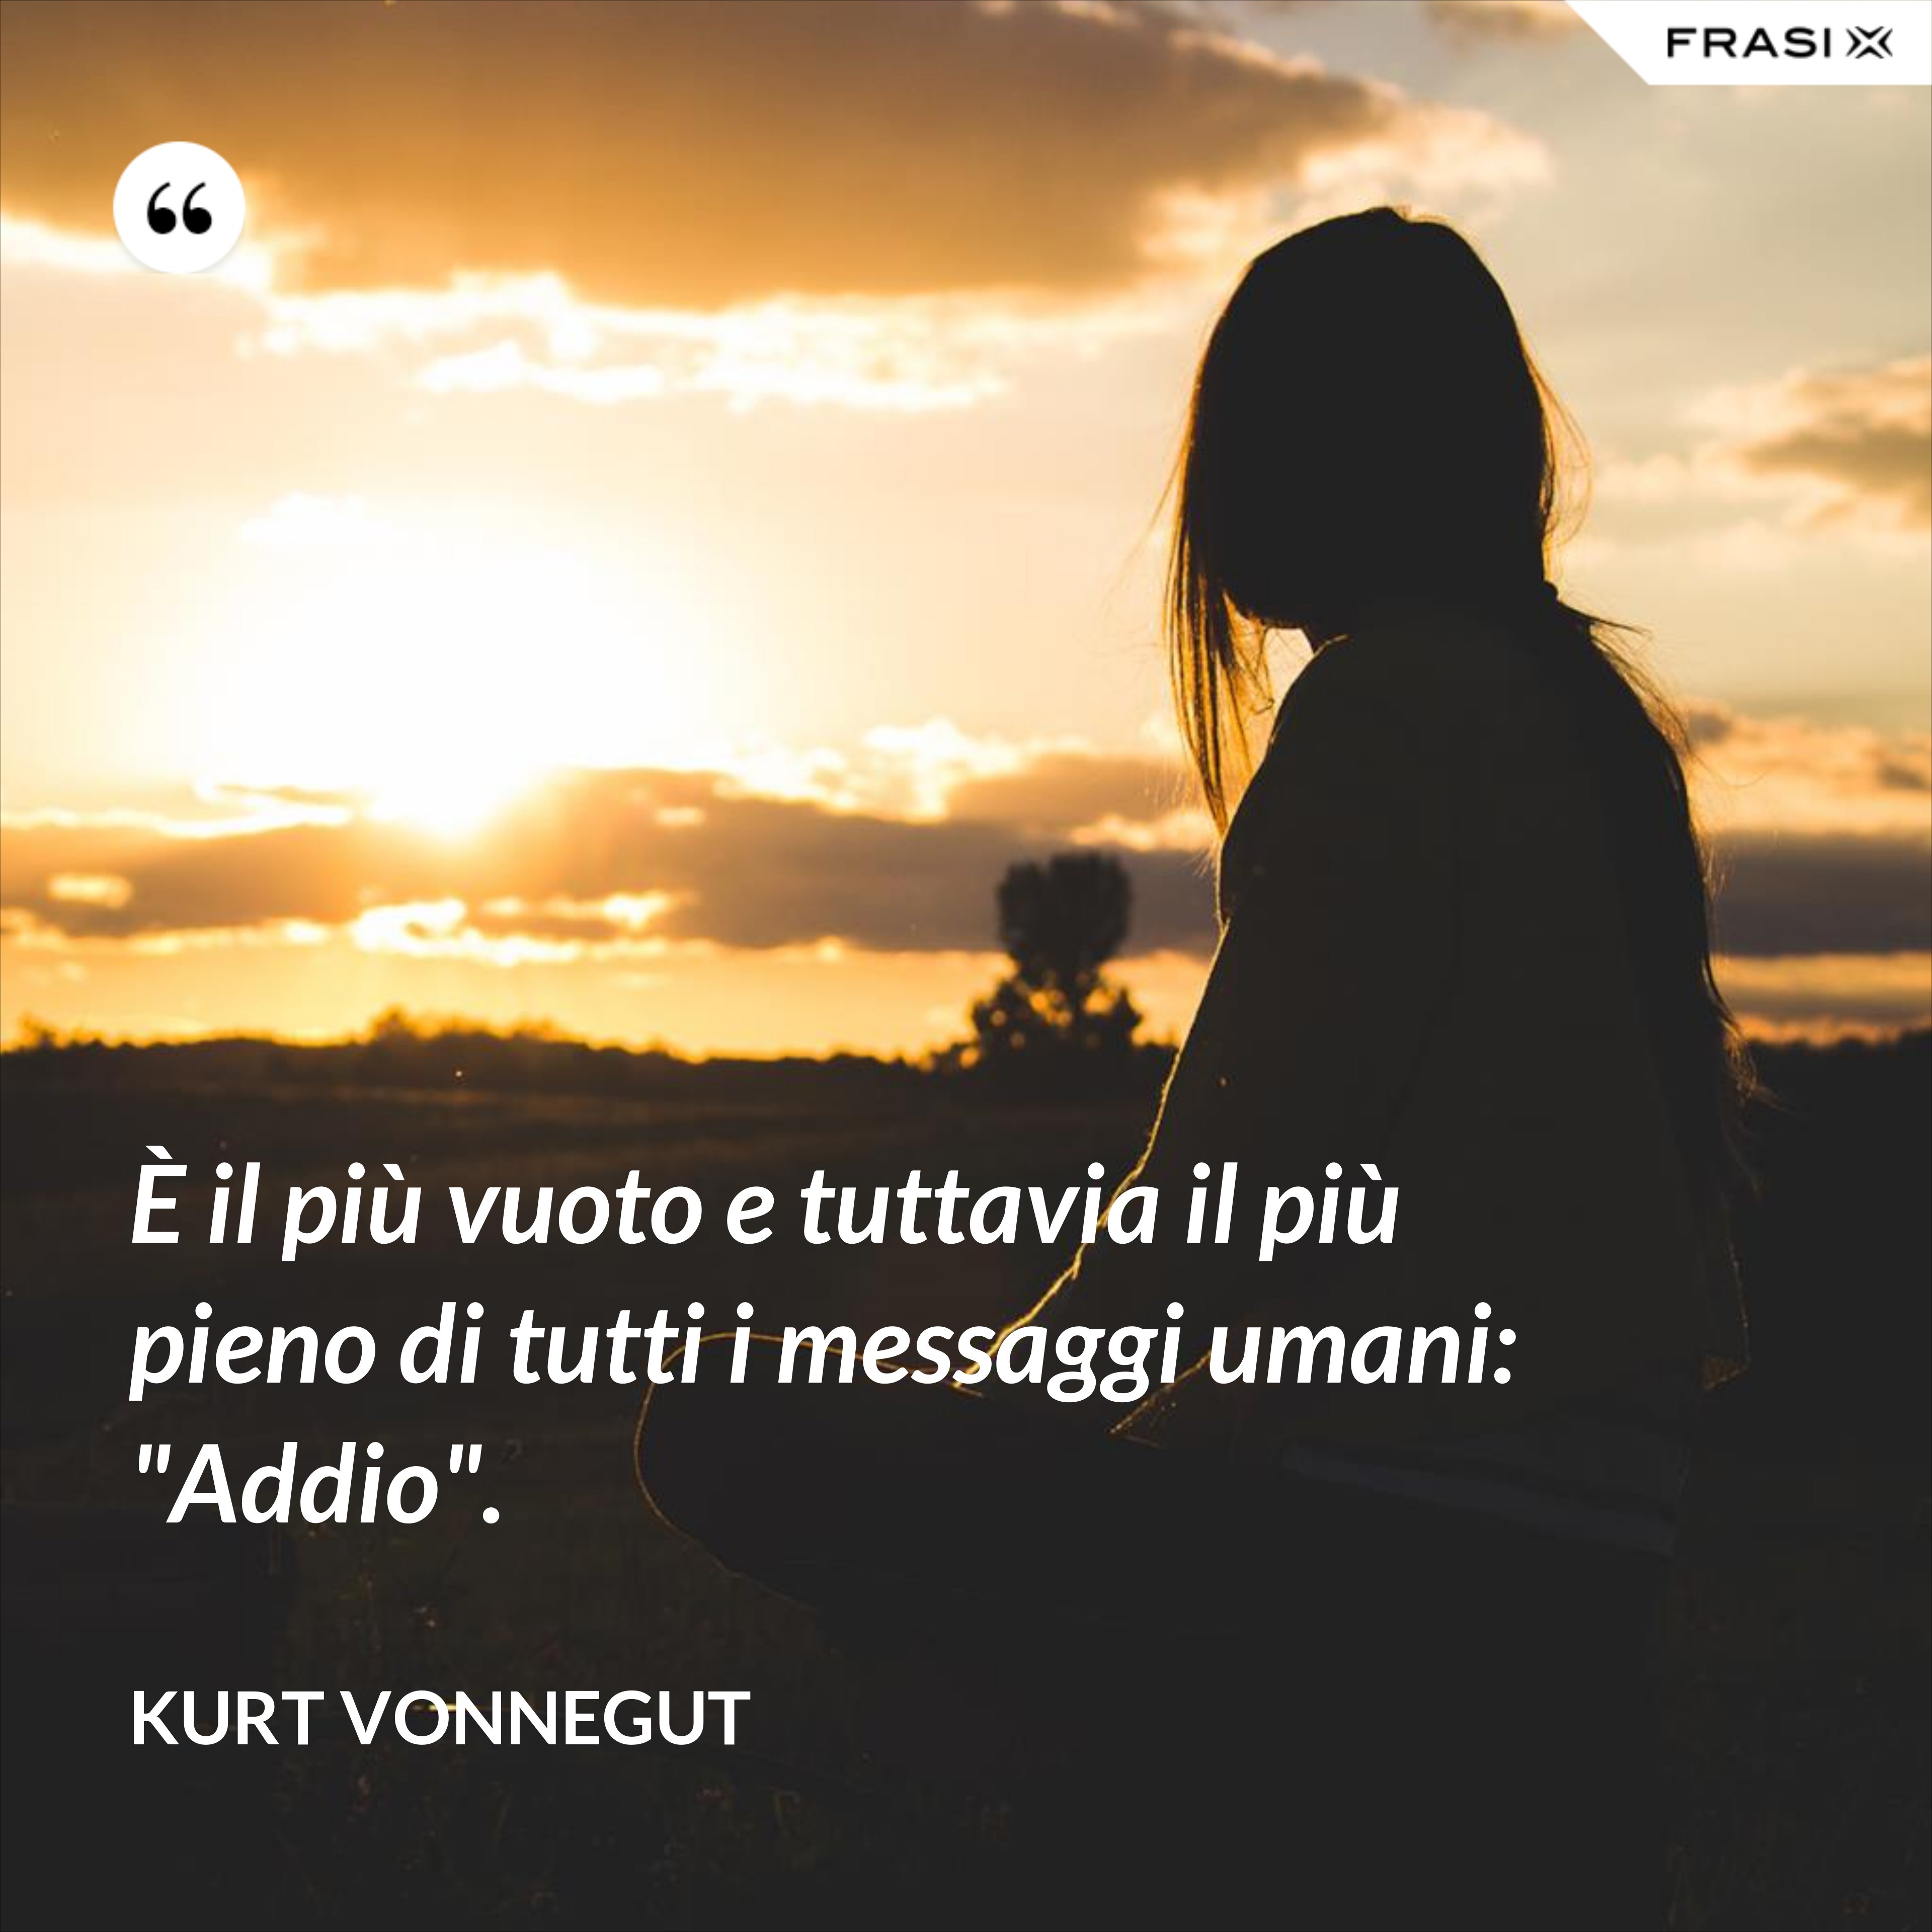 È il più vuoto e tuttavia il più pieno di tutti i messaggi umani: "Addio". - Kurt Vonnegut